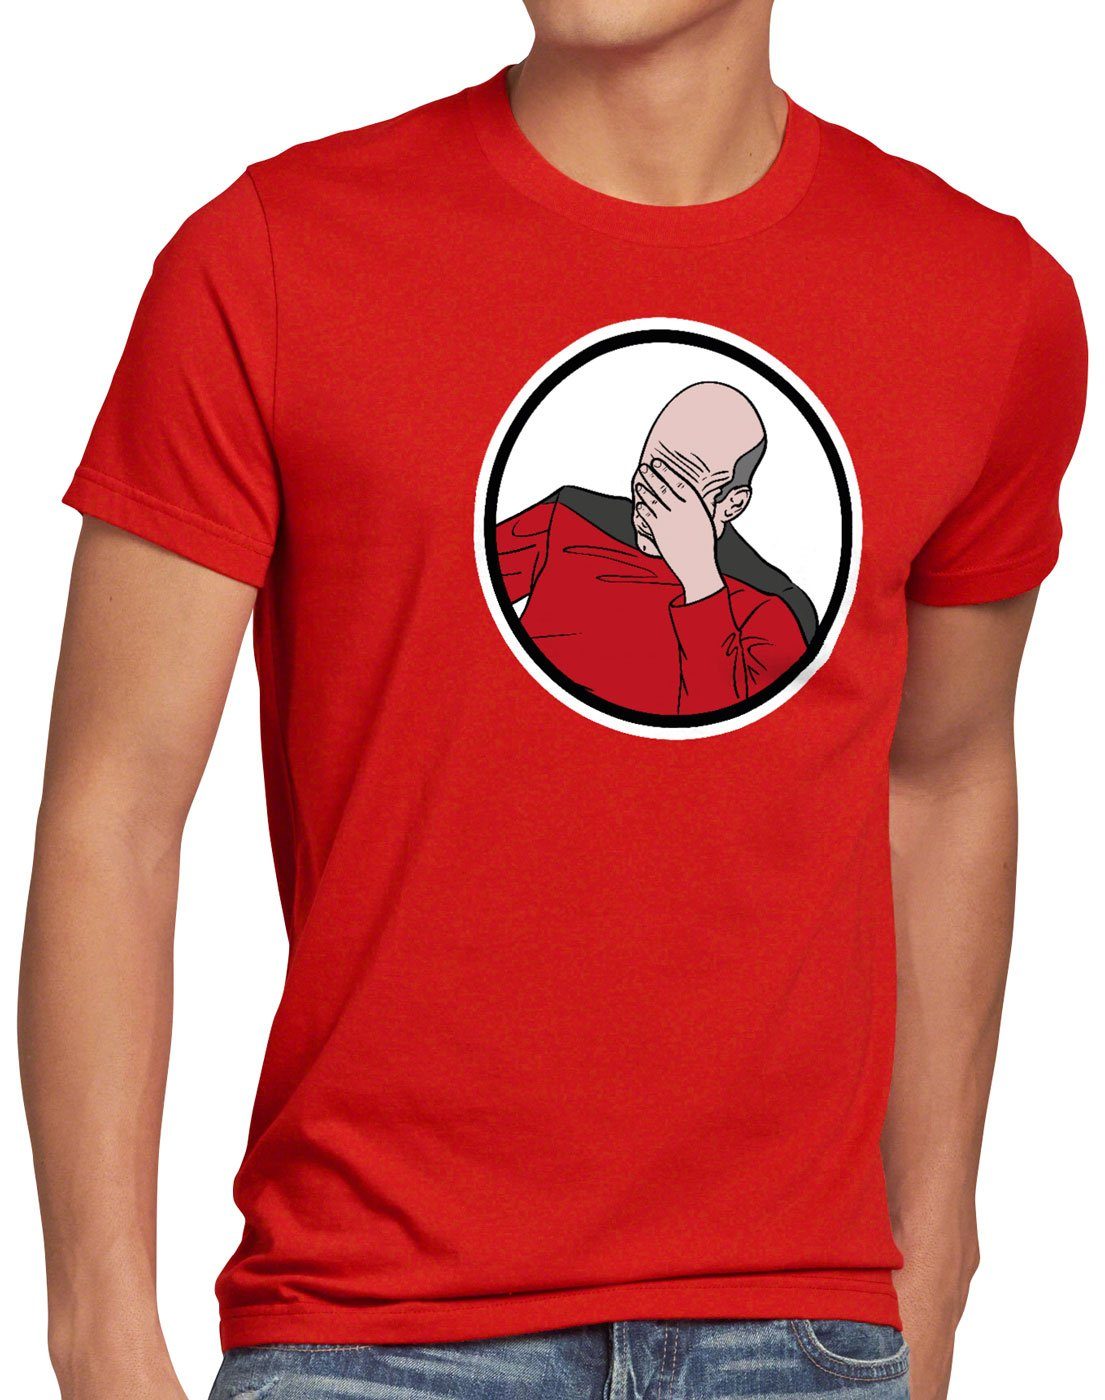 Picard meme style3 Print-Shirt Herren rot scham Facepalm internet T-Shirt